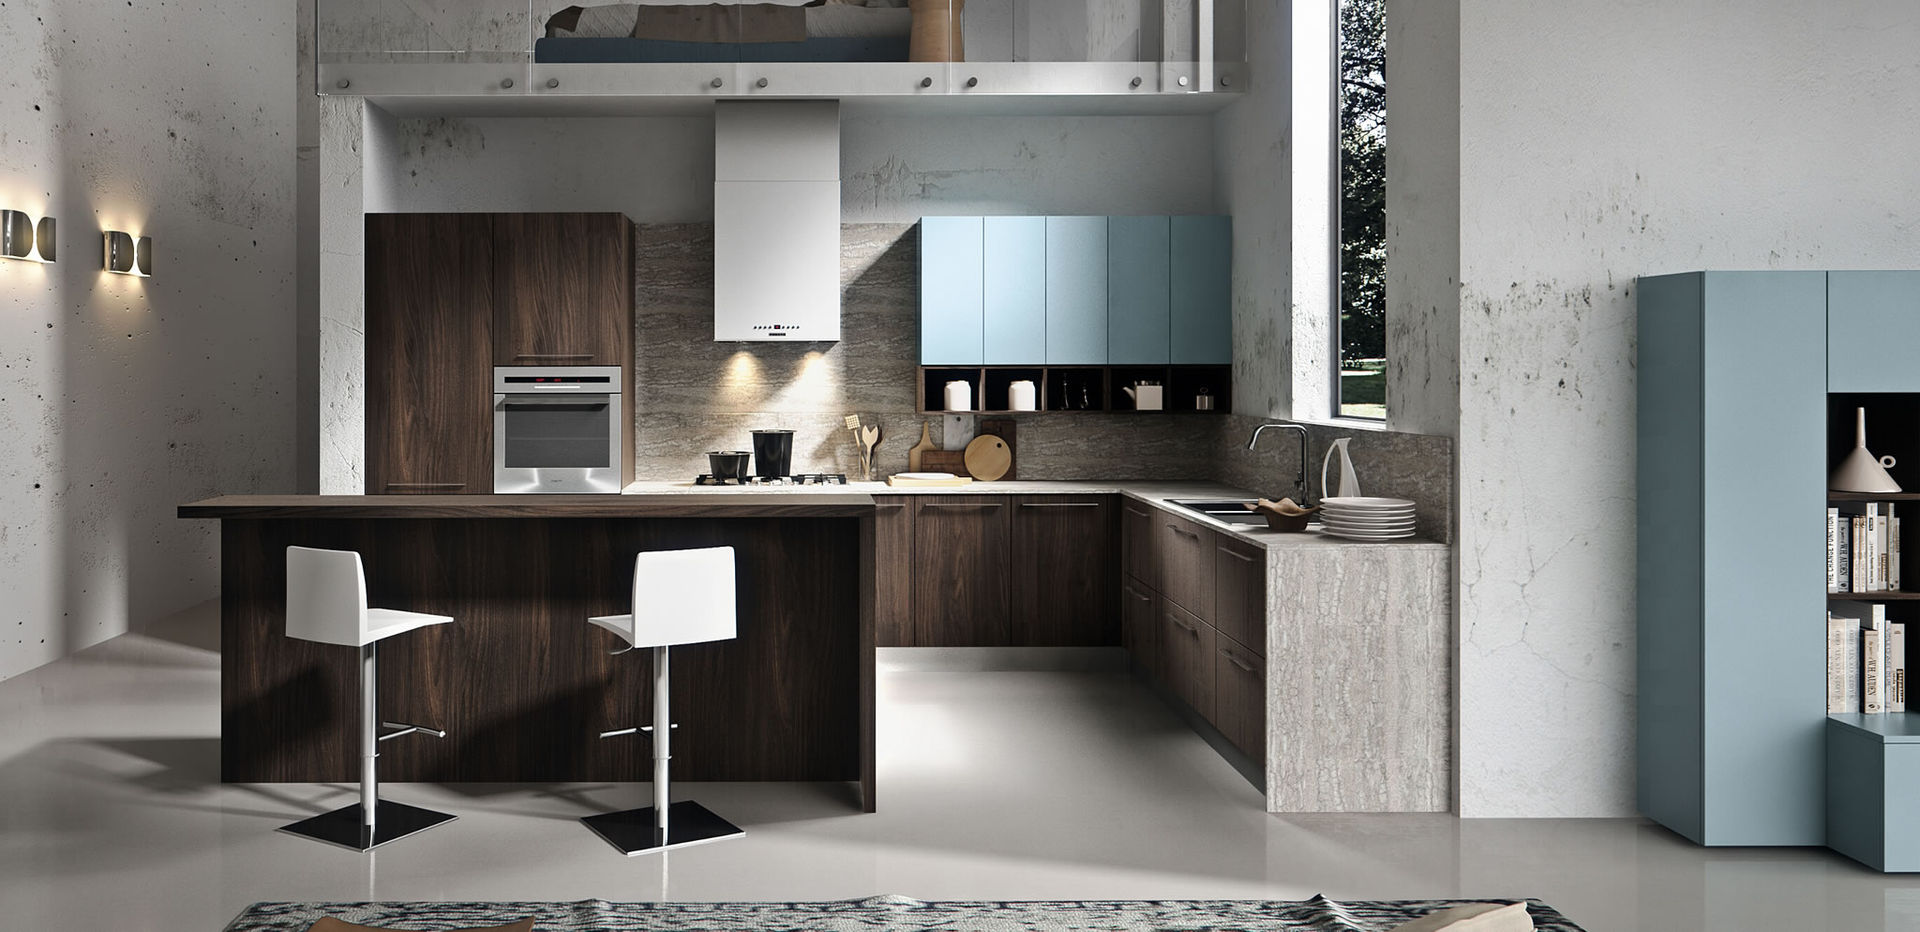 Cucina moderna, L&M design di Cinzia Marelli L&M design di Cinzia Marelli Bếp xây sẵn Gỗ Wood effect